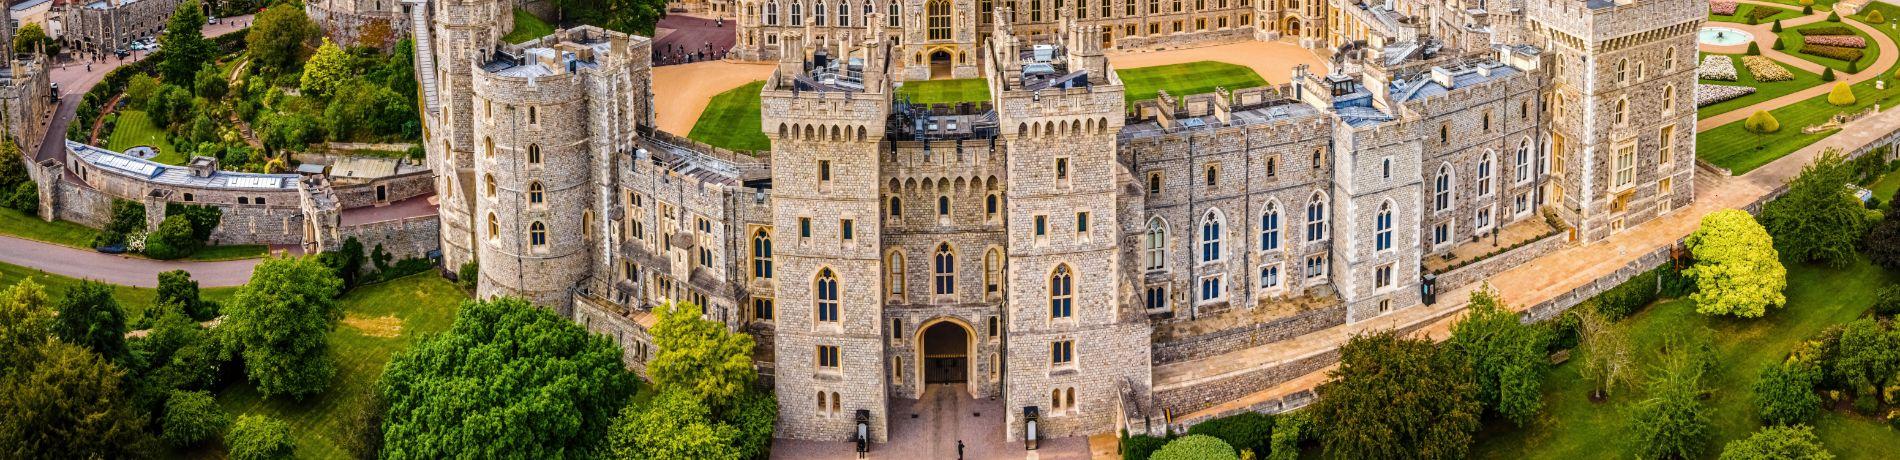 Castello di Windsor | Eden viaggi